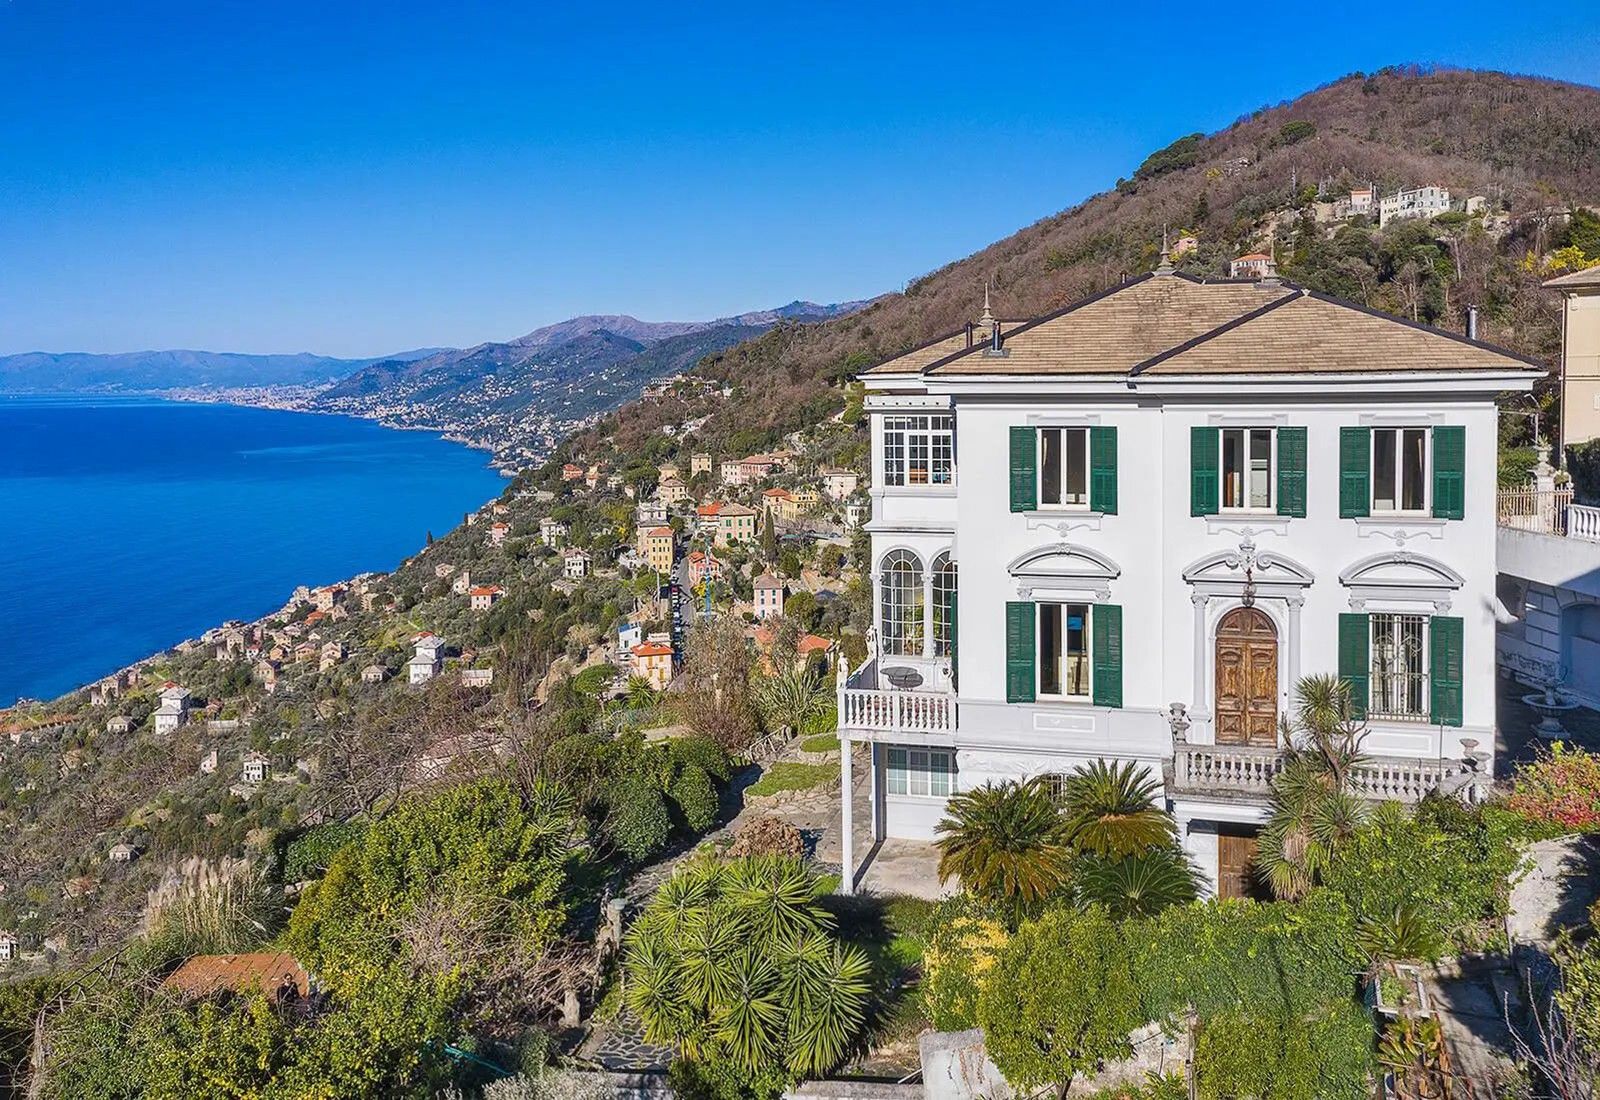 Images Exclusieve historische villa in Ligurië met fantastisch uitzicht op zee